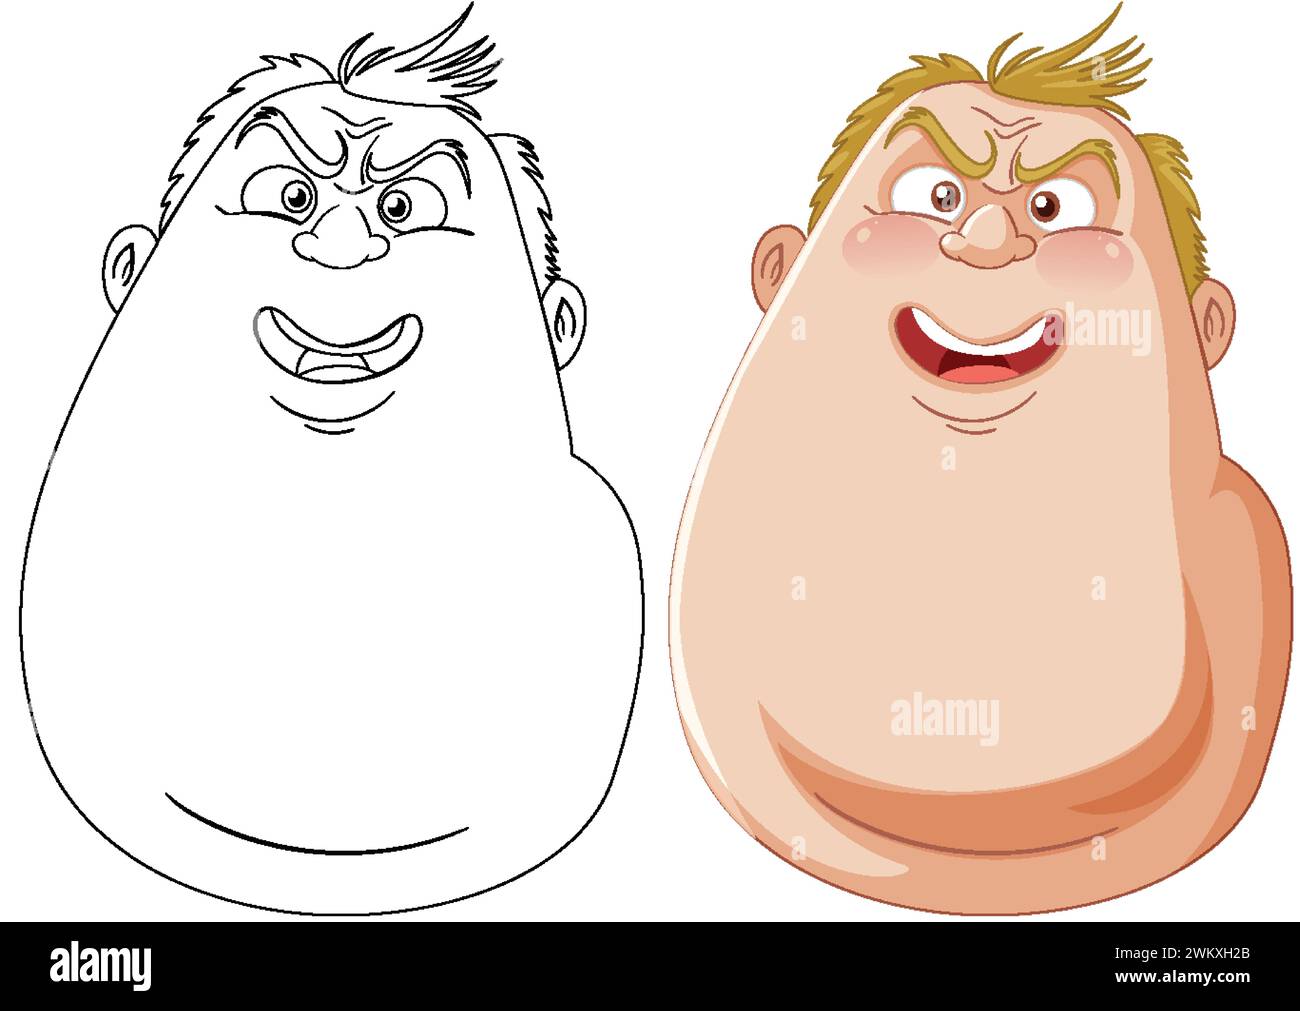 Deux personnages de dessins animés montrant des émotions différentes Illustration de Vecteur